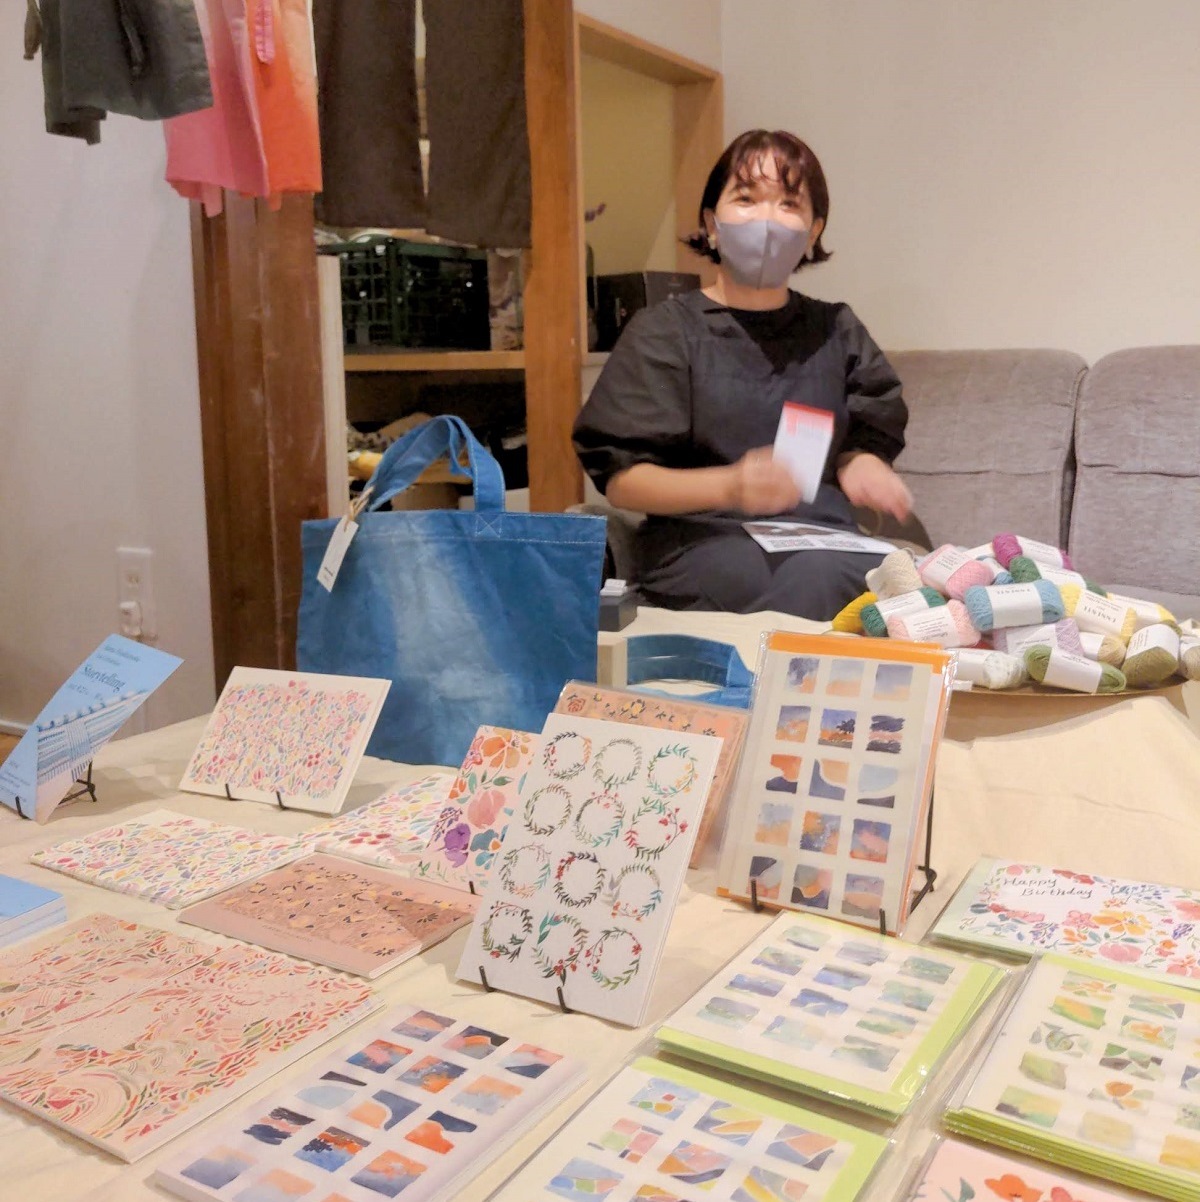 Anna Hashimotoによる手織りのアート作品・イラストレーションなどの展示販売